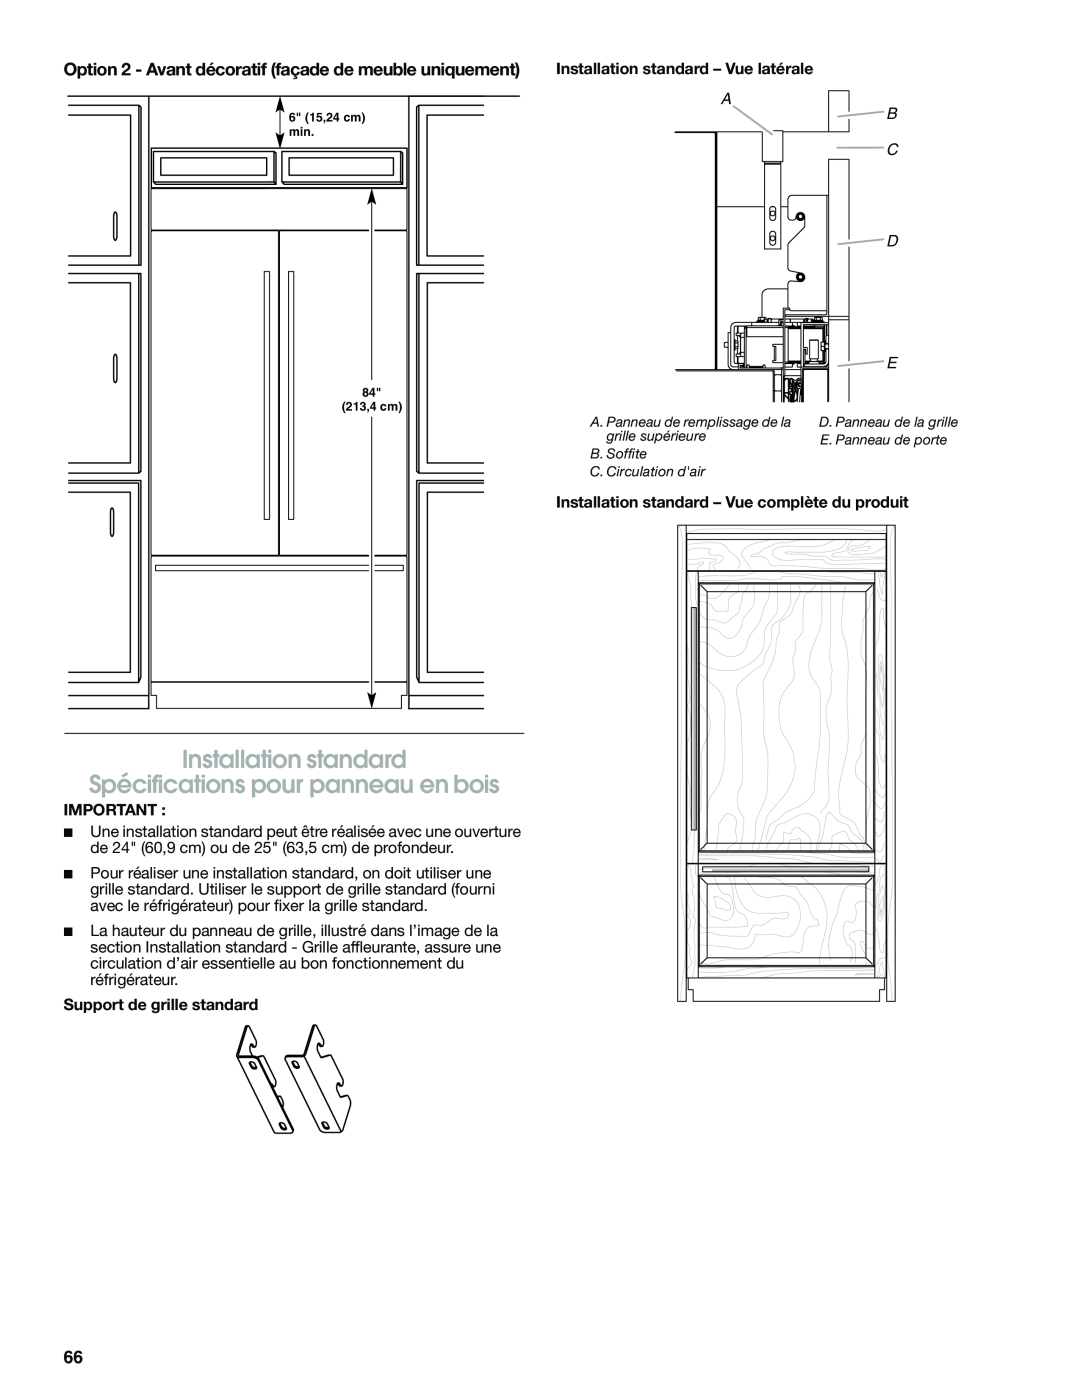 Jenn-Air W10379137A manual Installation standard, Spécifications pour panneau en bois, A B C D, Support de grille standard 